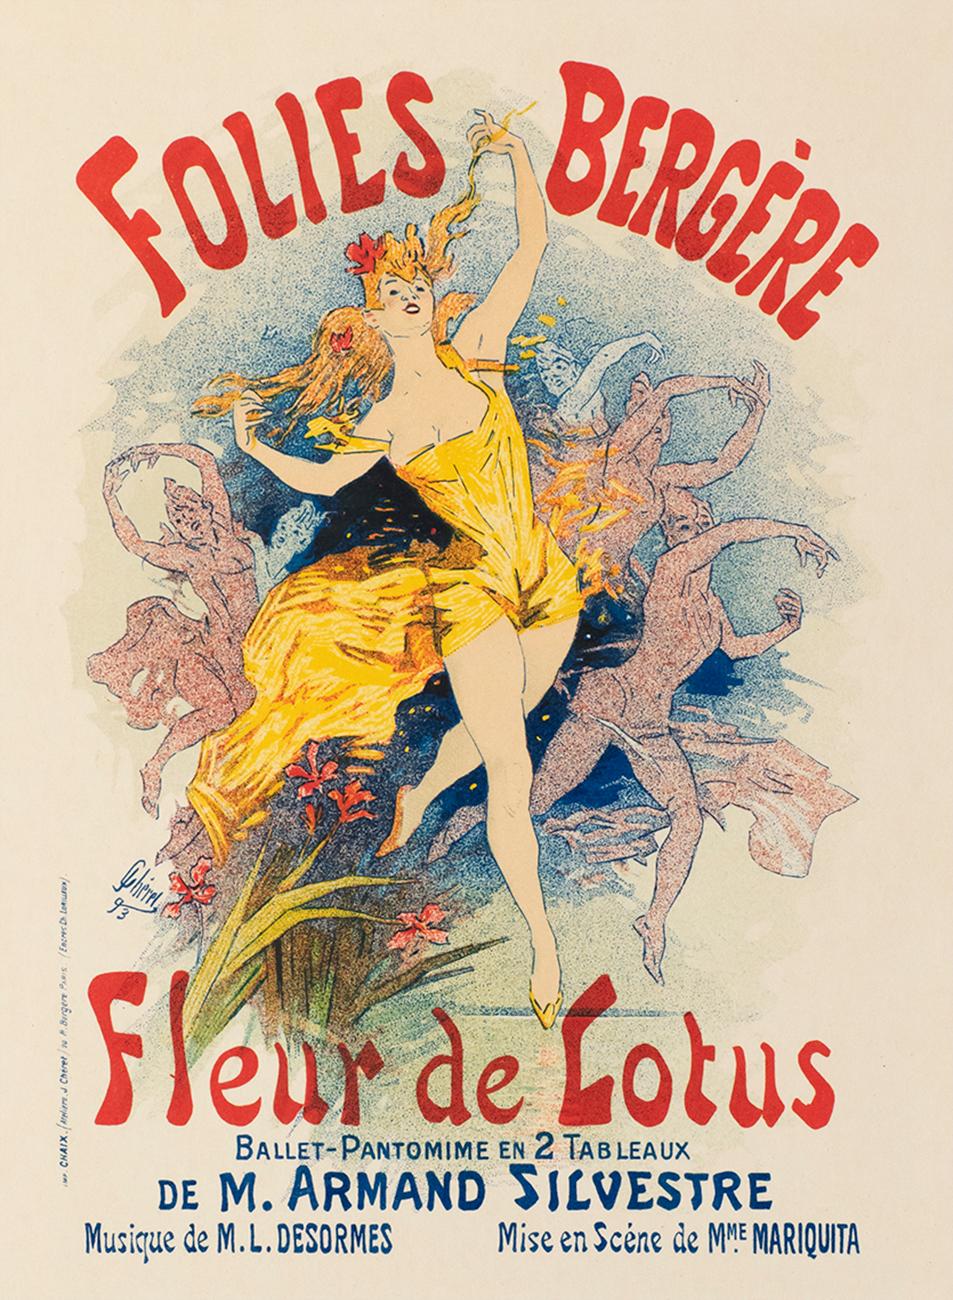 Folies Bergère: Fleur de Lotus by Jules Chéret, Belle Époque lithograph, 1896